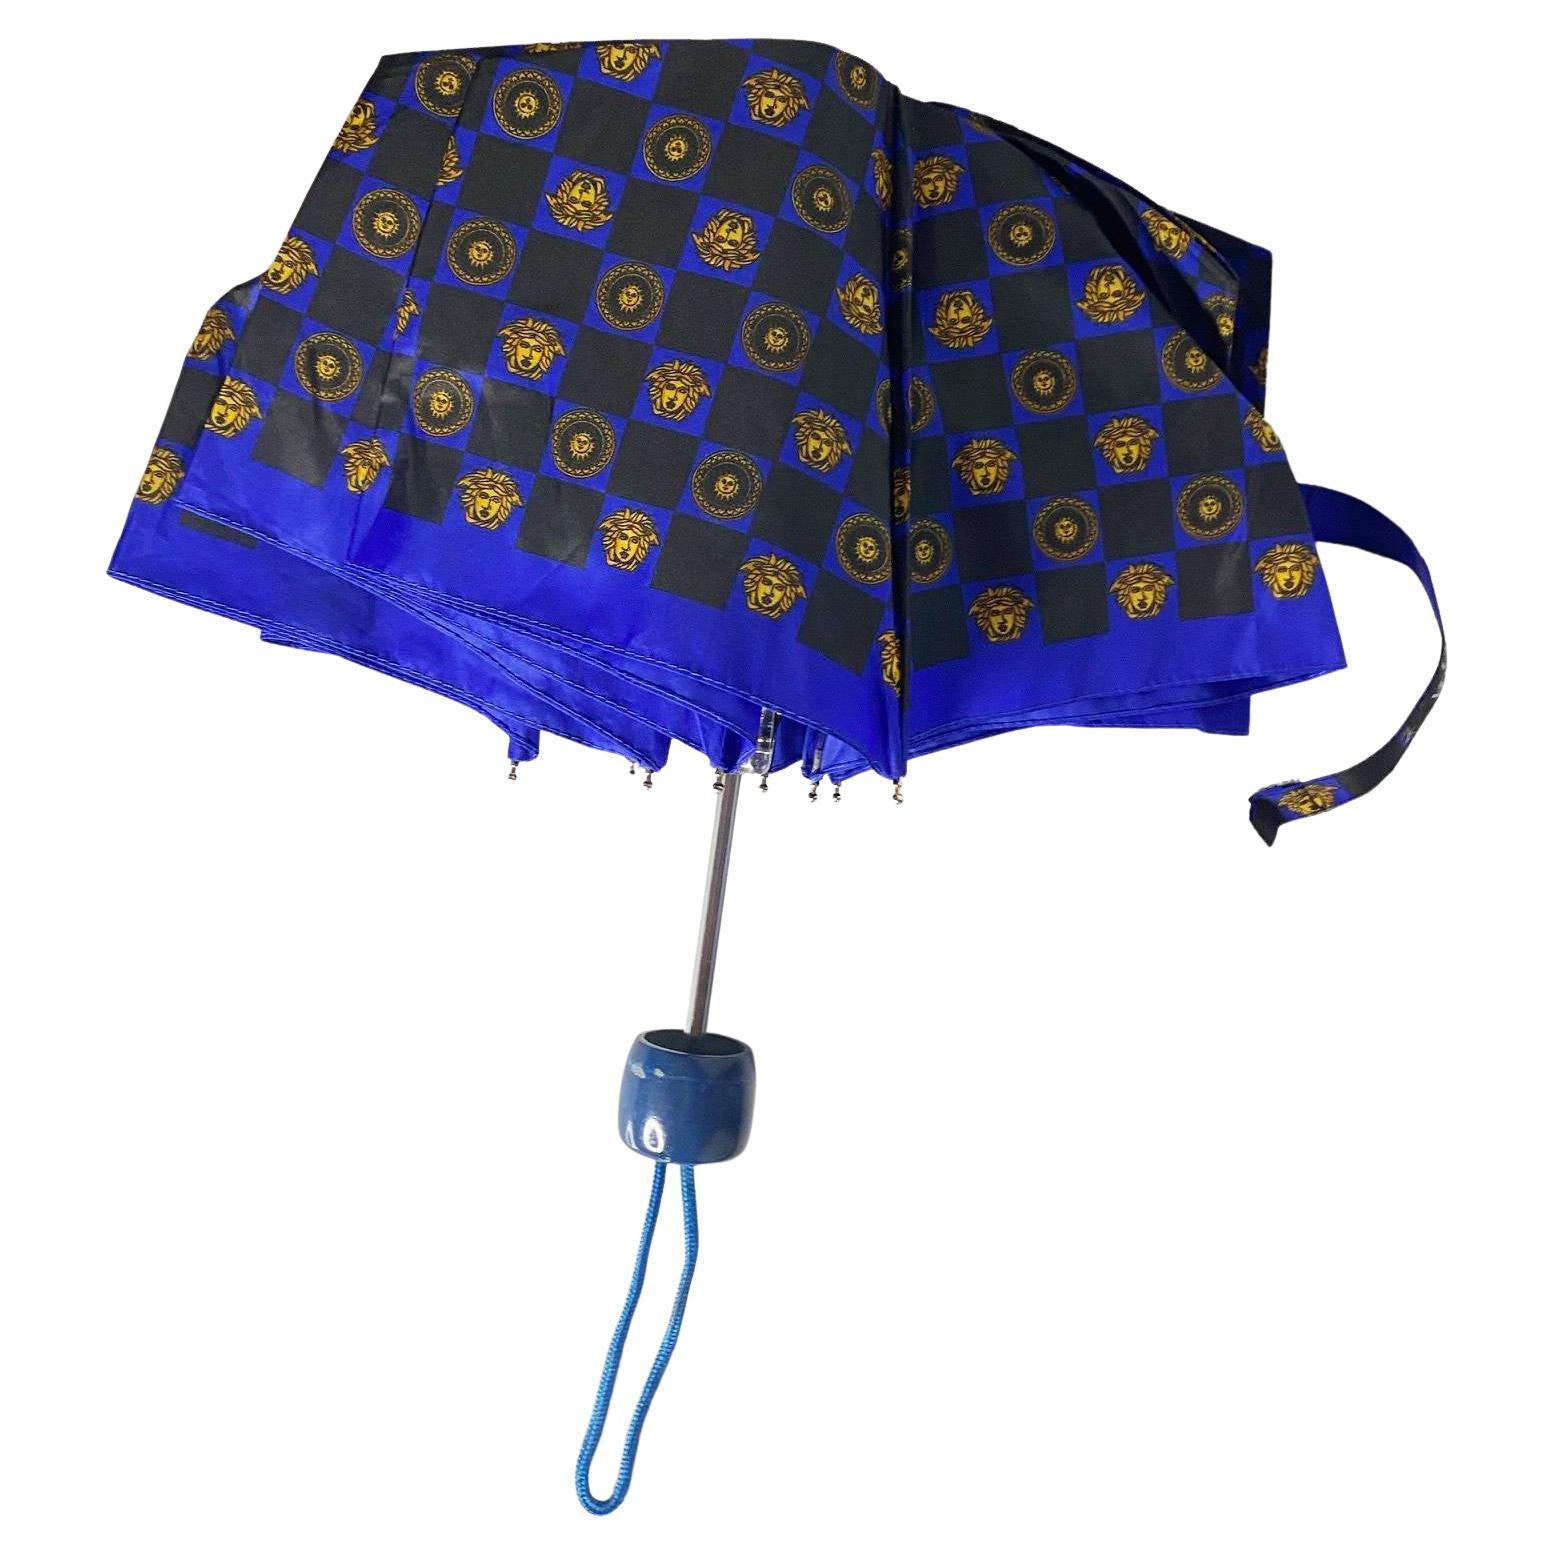 Dieser klassische Regenschirm von Gianni Versace aus den 1980er Jahren in der Farbe Medusa Blue zeichnet sich durch ein zeitloses Design aus, das aus hochwertigen MATERIALEN gefertigt wurde, um Ihnen einen Regenschirm zu bieten, der jahrelang halten